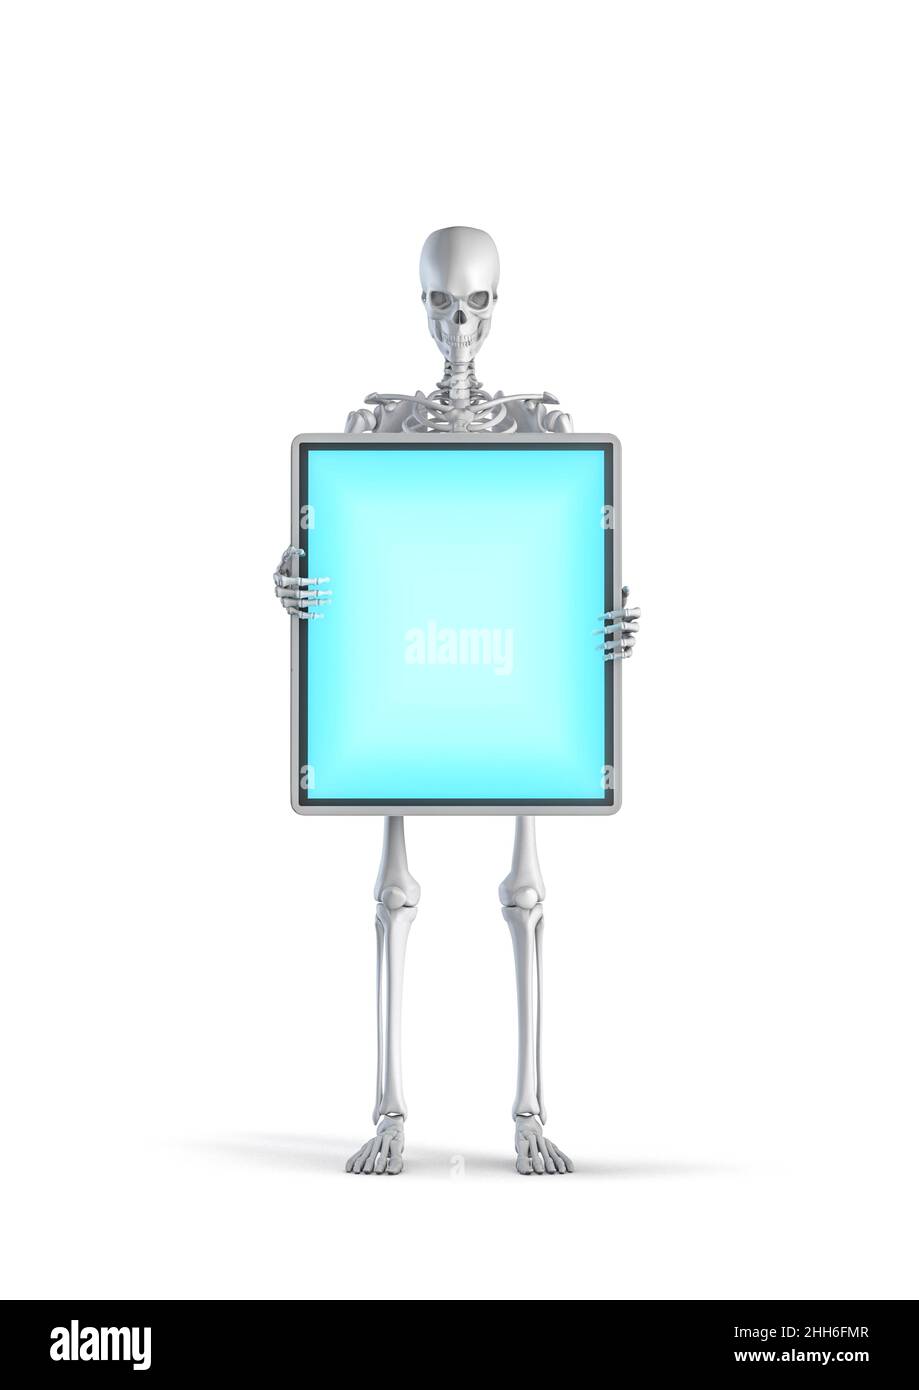 Skelett digitale Anzeige Konzept - 3D Illustration der männlichen menschlichen Skelett Figur hält bis leeren Flachbildschirm isoliert auf weißem Studio-Hintergrund Stockfoto